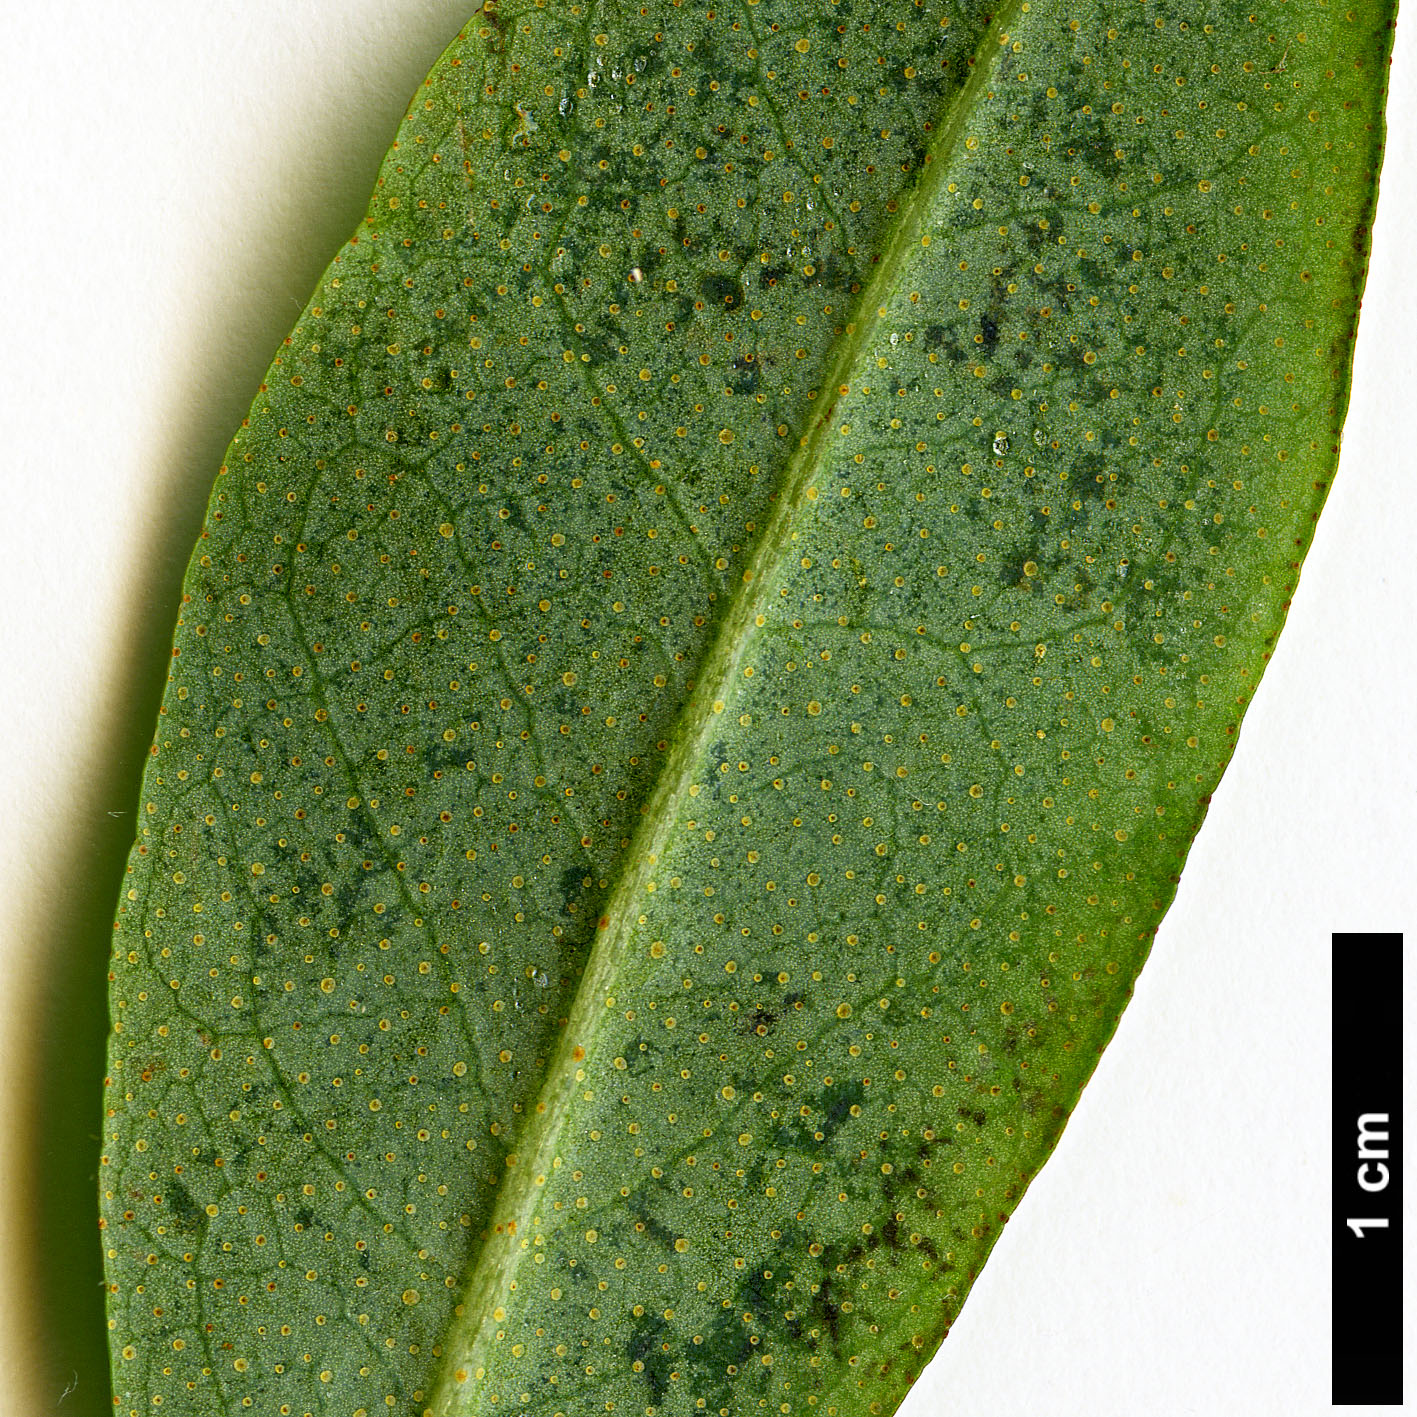 High resolution image: Family: Ericaceae - Genus: Rhododendron - Taxon: cinnabarinum - SpeciesSub: subsp. tamaense